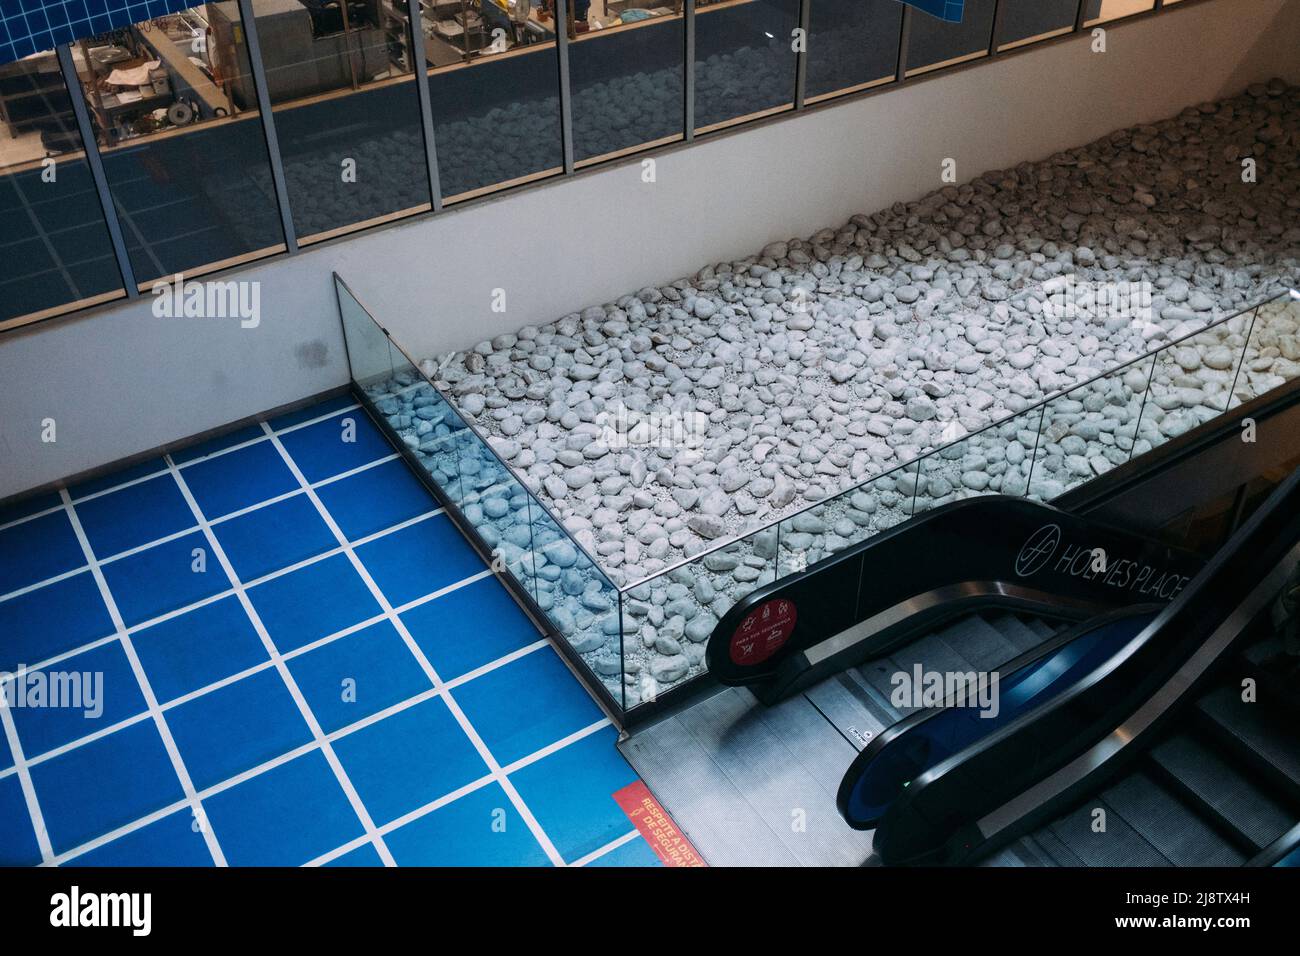 Porto, Portugal, 11.04.22: Ein Einkaufscenter mit interessanter Einrichtung, blauen Fliesen und einem Steinbecken.  Foto: pressefoto Mika Volkmann Stock Photo